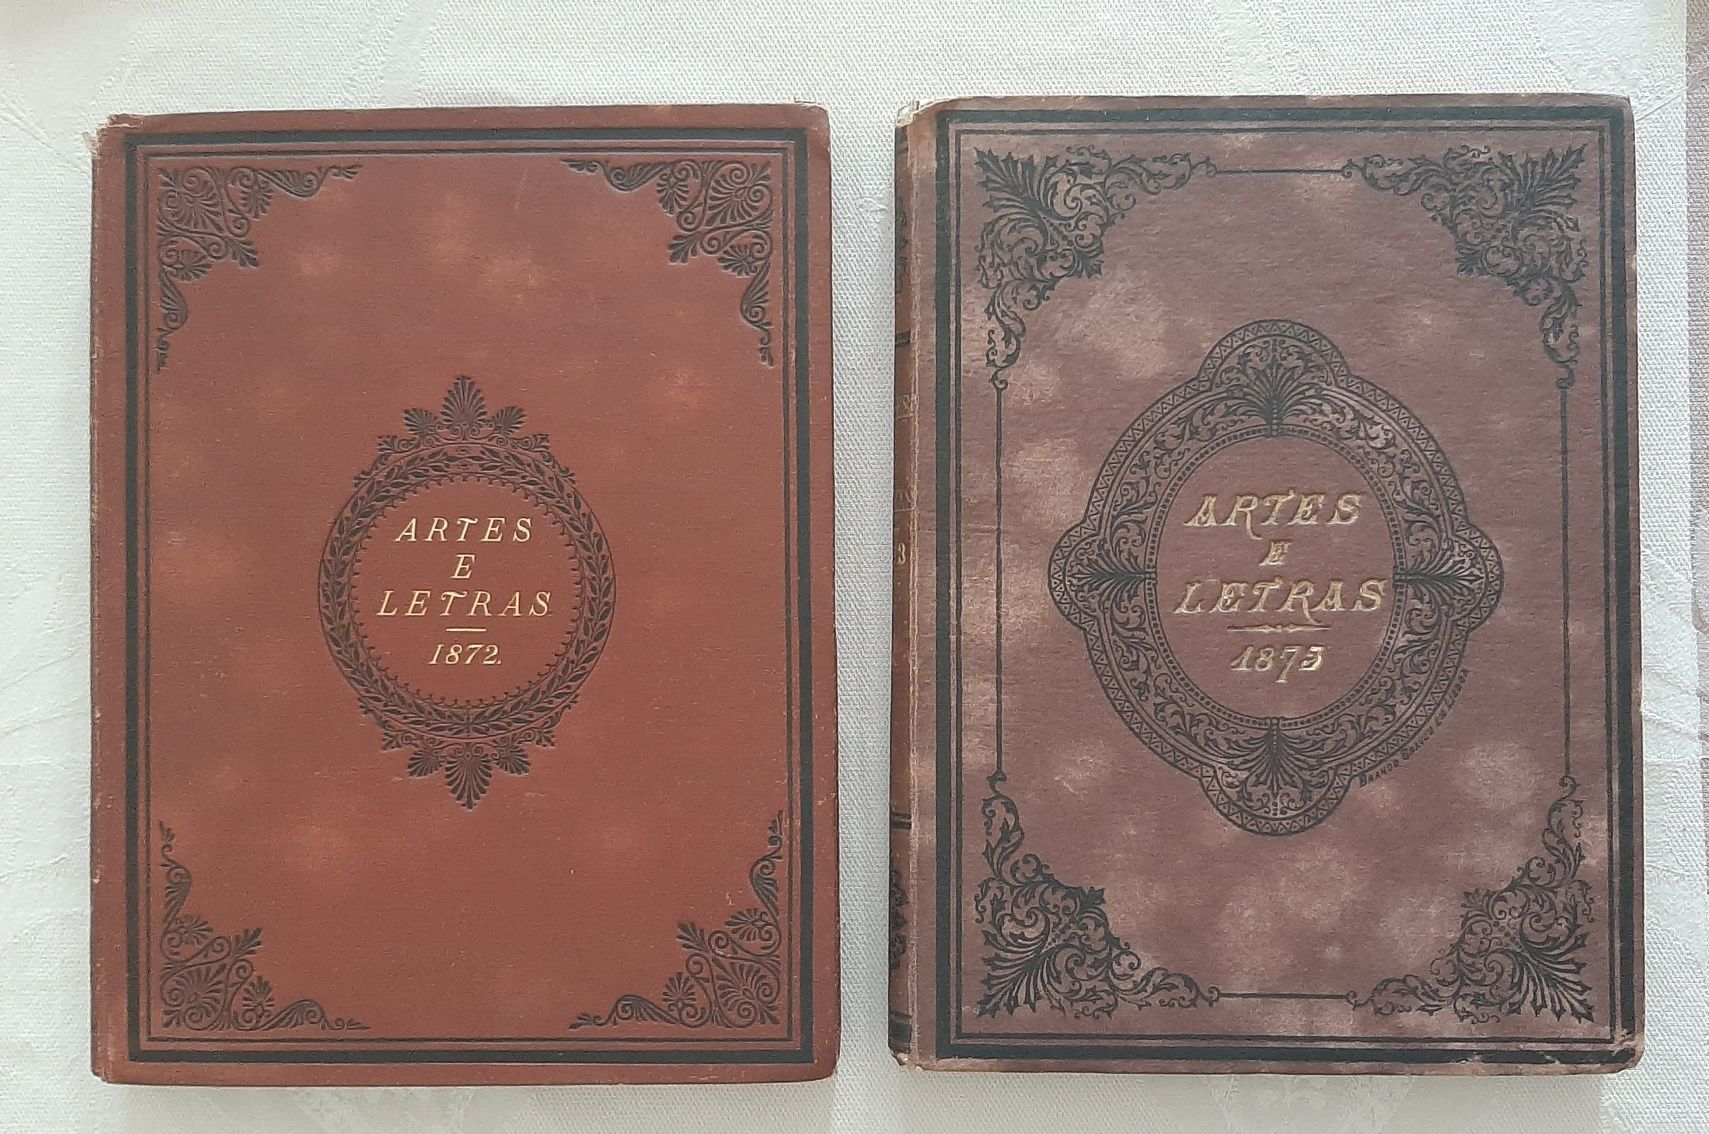 *Artes e Letras* - Direção de Rangel de Lima. Vol I e II 1872/73. Raro